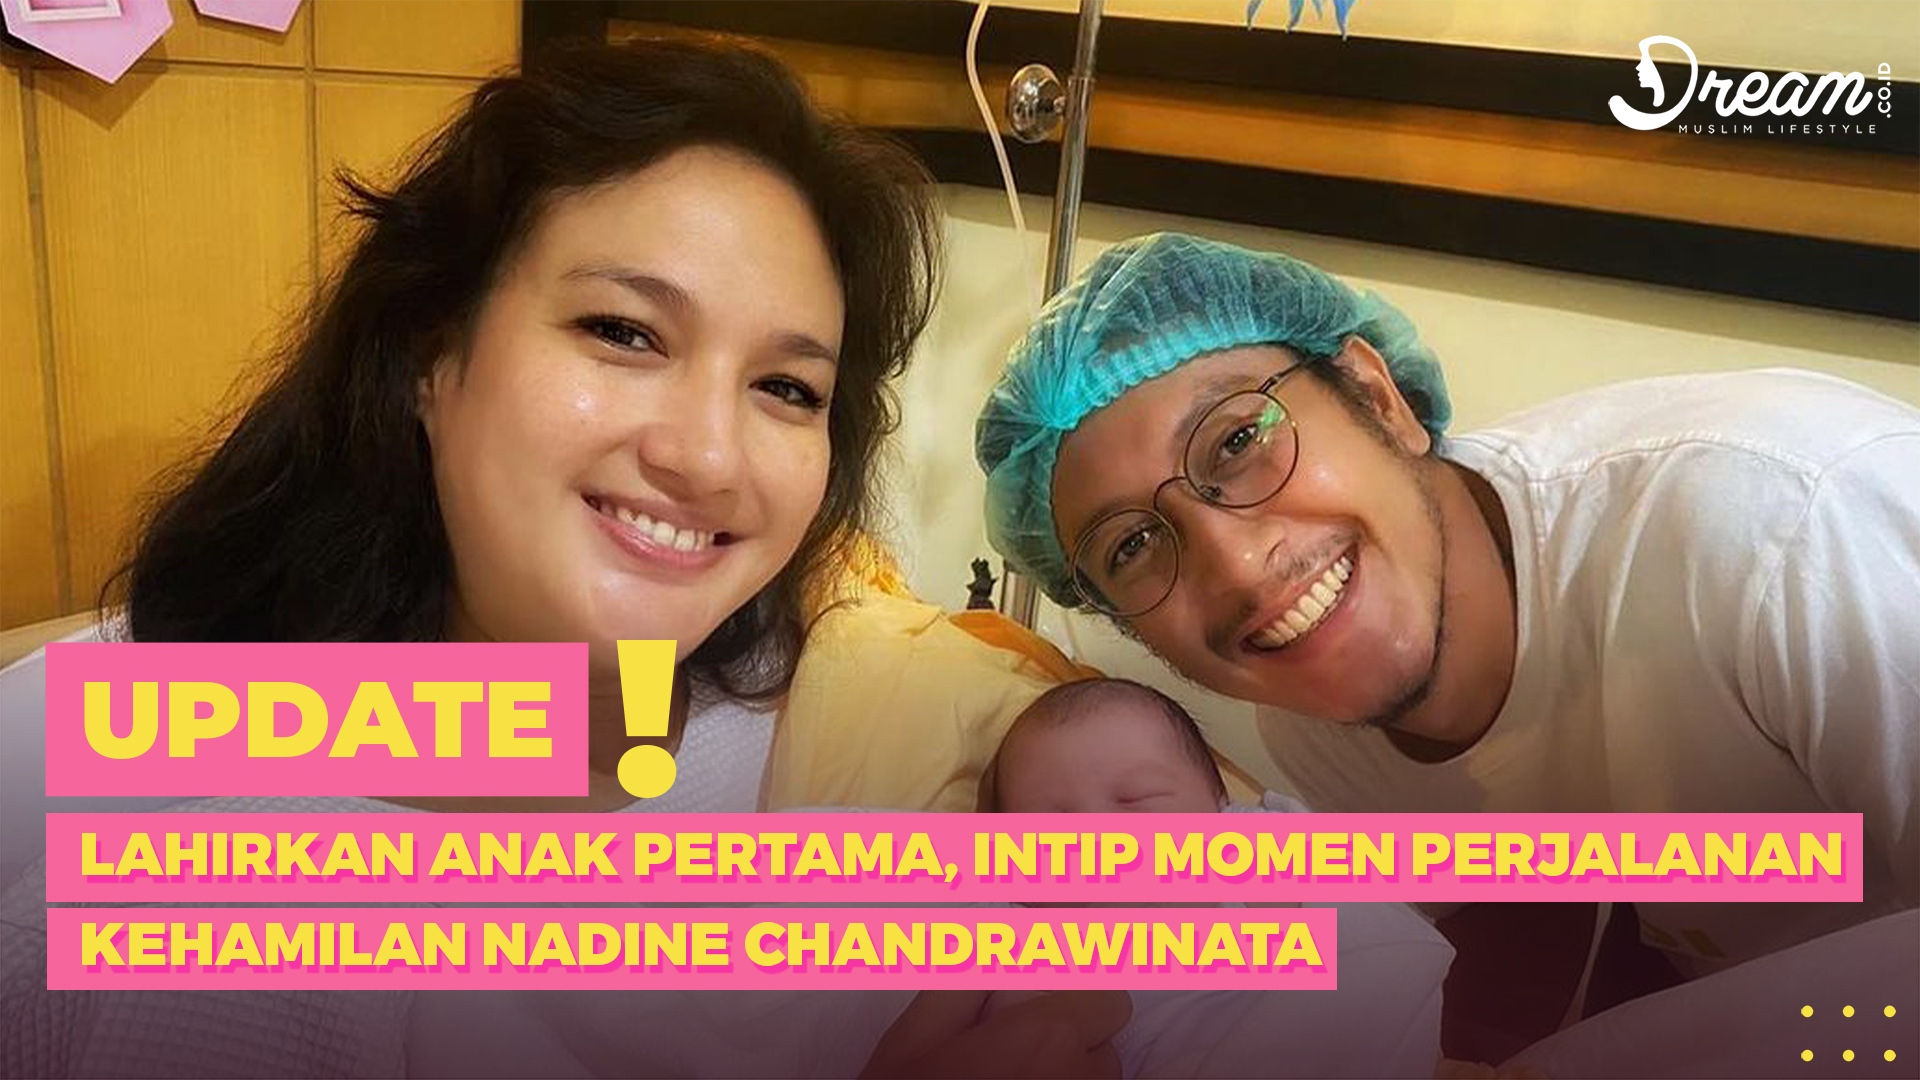 Lahirkan Anak Pertama, Intip Momen Perjalanan Kehamilan Nadine Chandrawinata